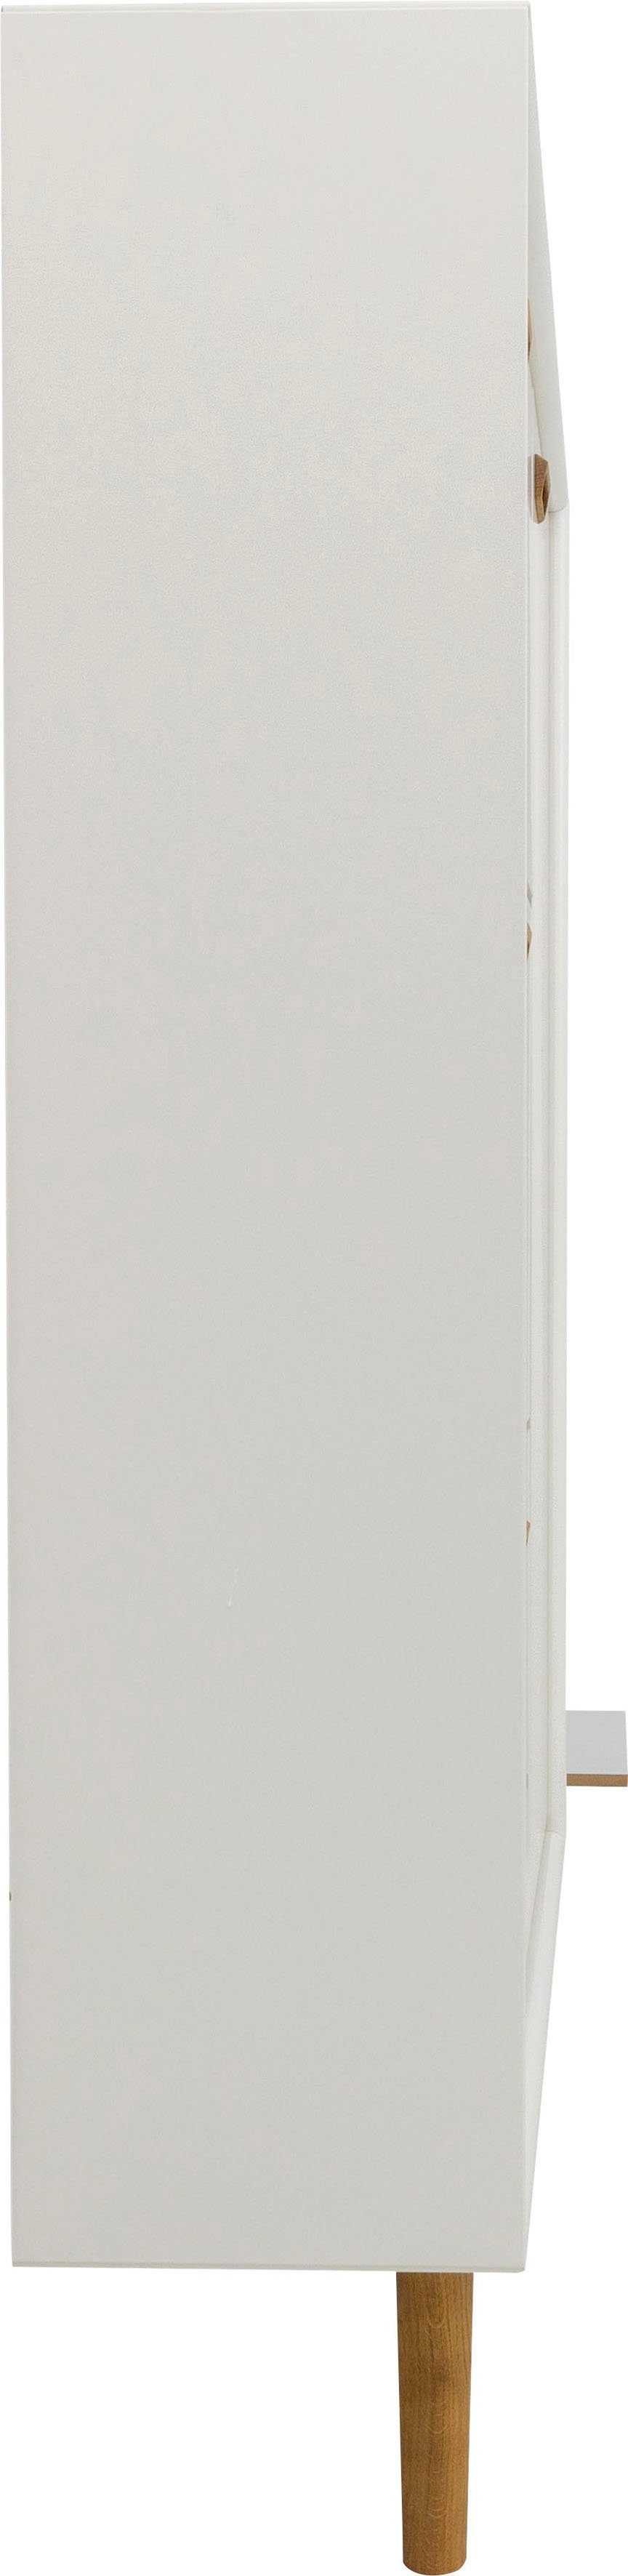 und 1 studio Tür Tenzo von Schuhschrank mit SVEA Klappen, Design Design white 3 Tenzo